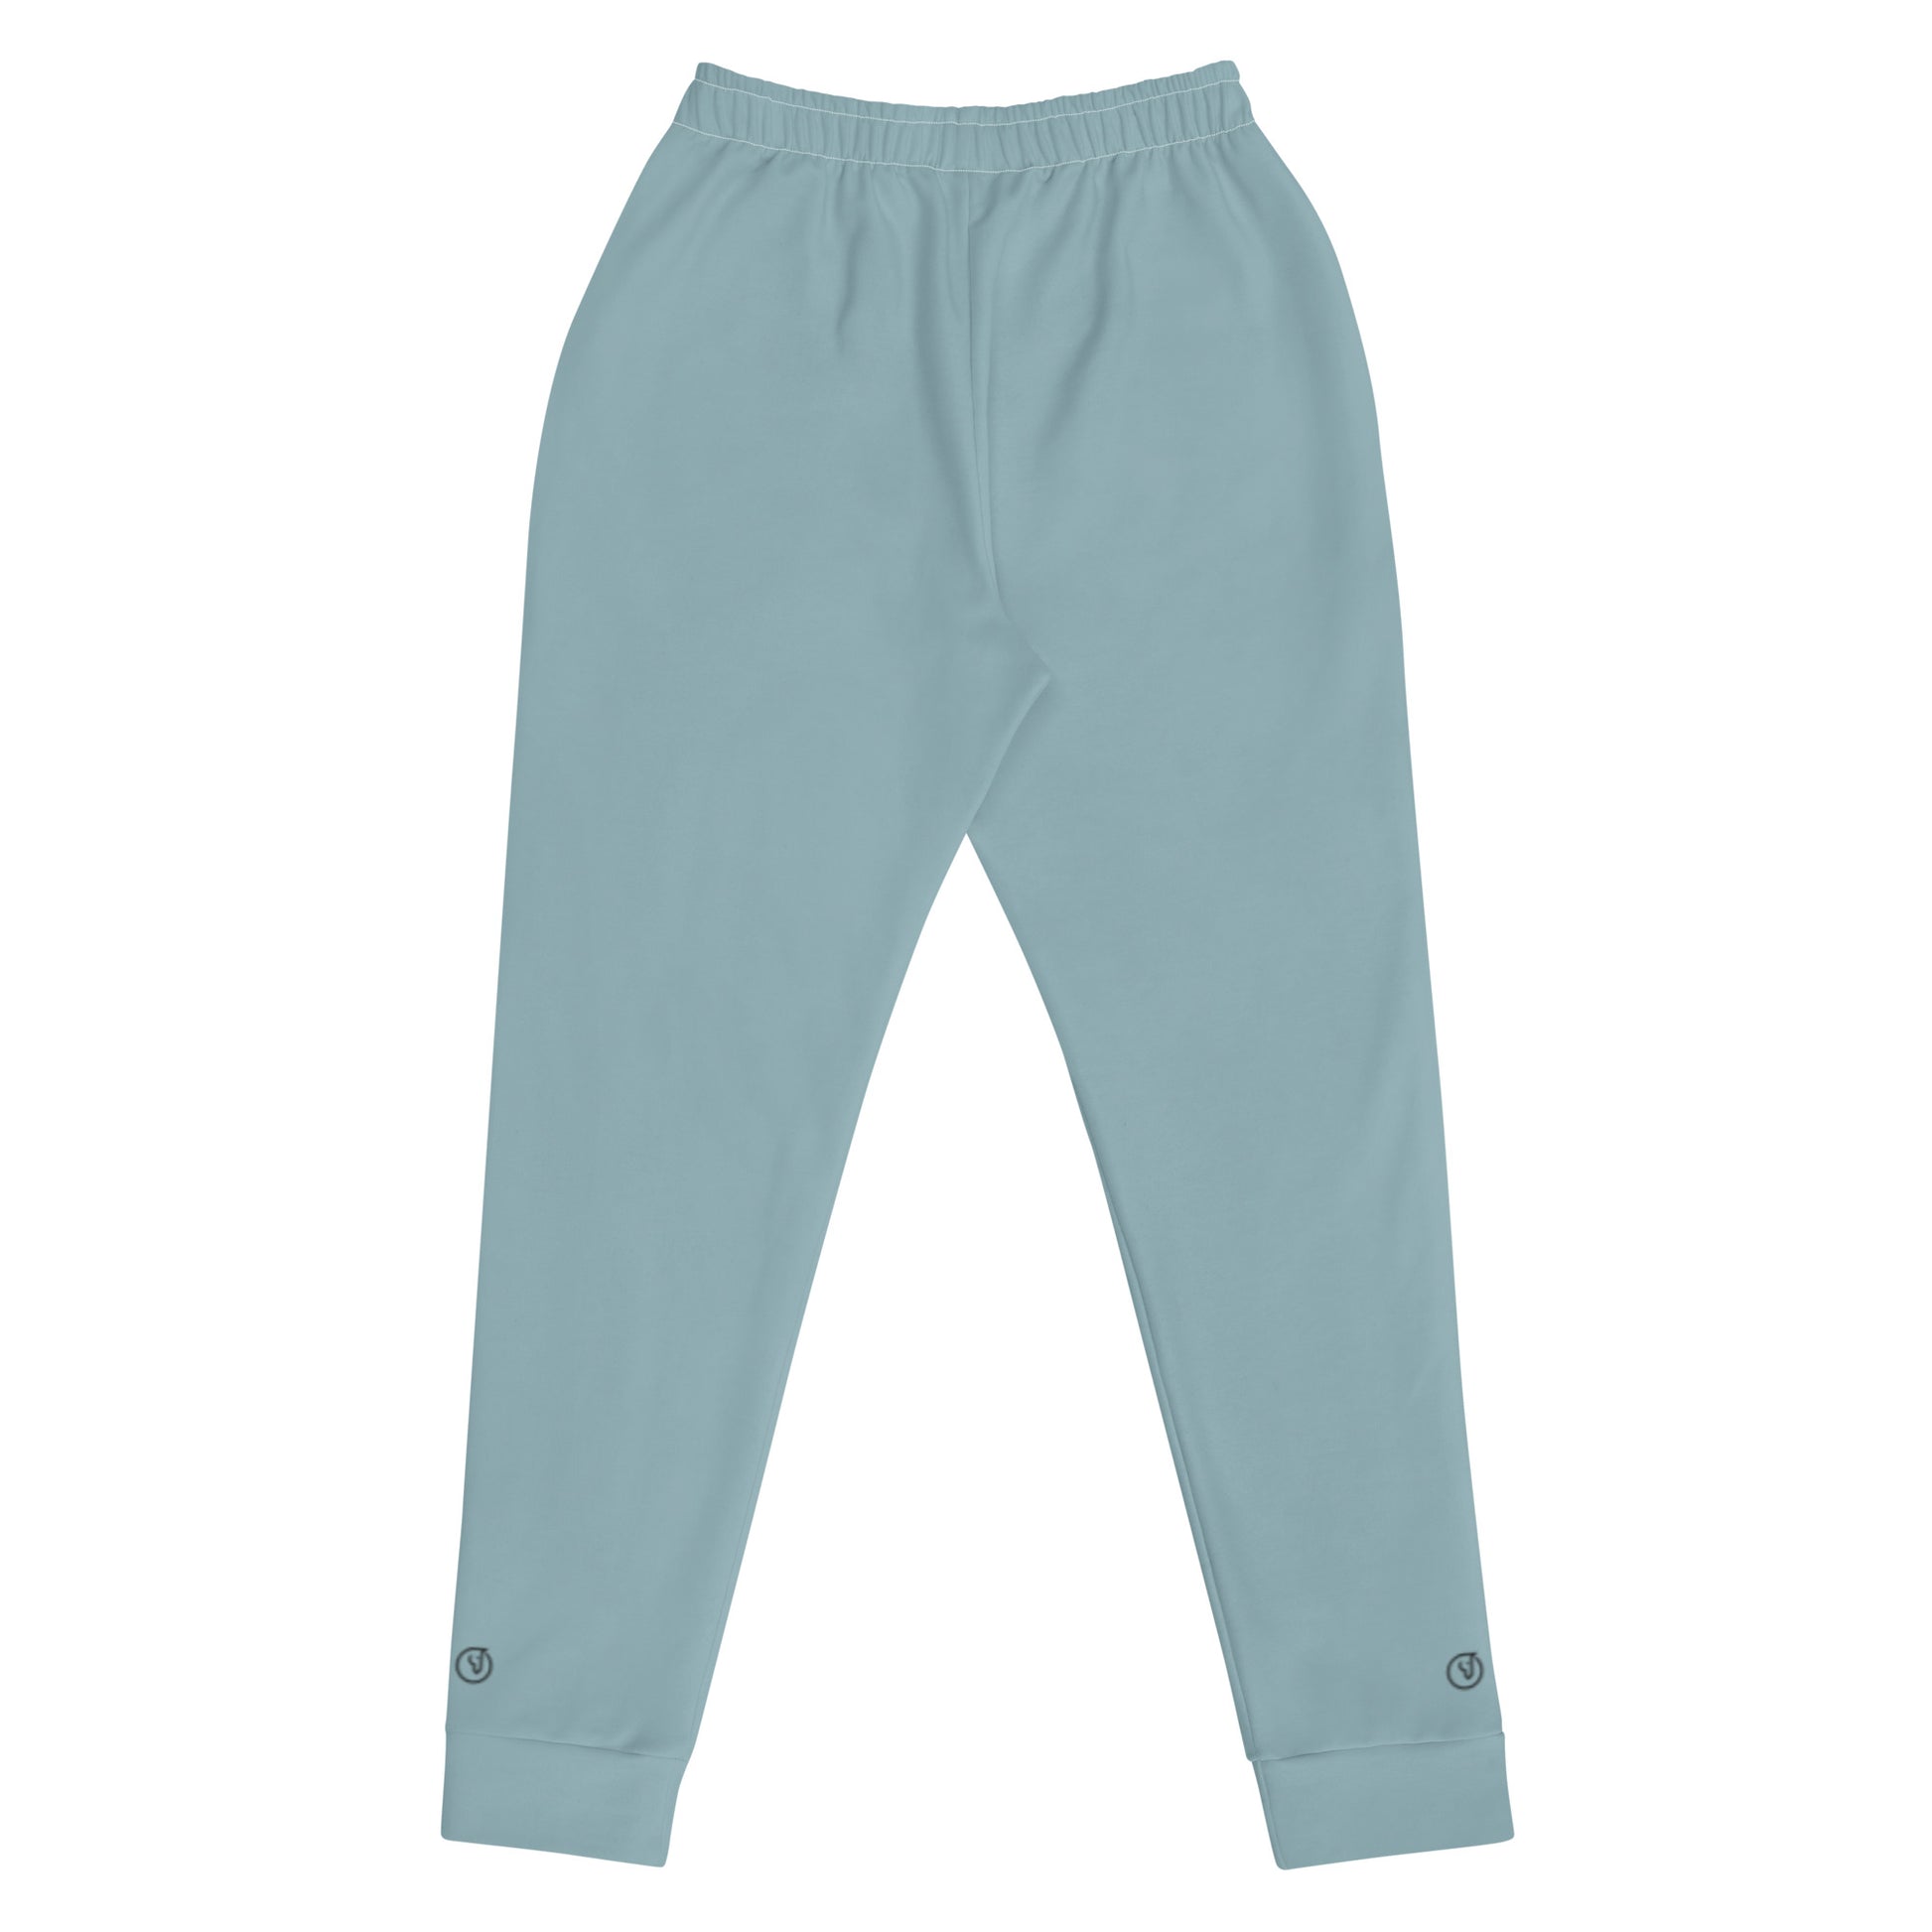 Humble Sportswear, women's blue cotton fleece joggers slim fit